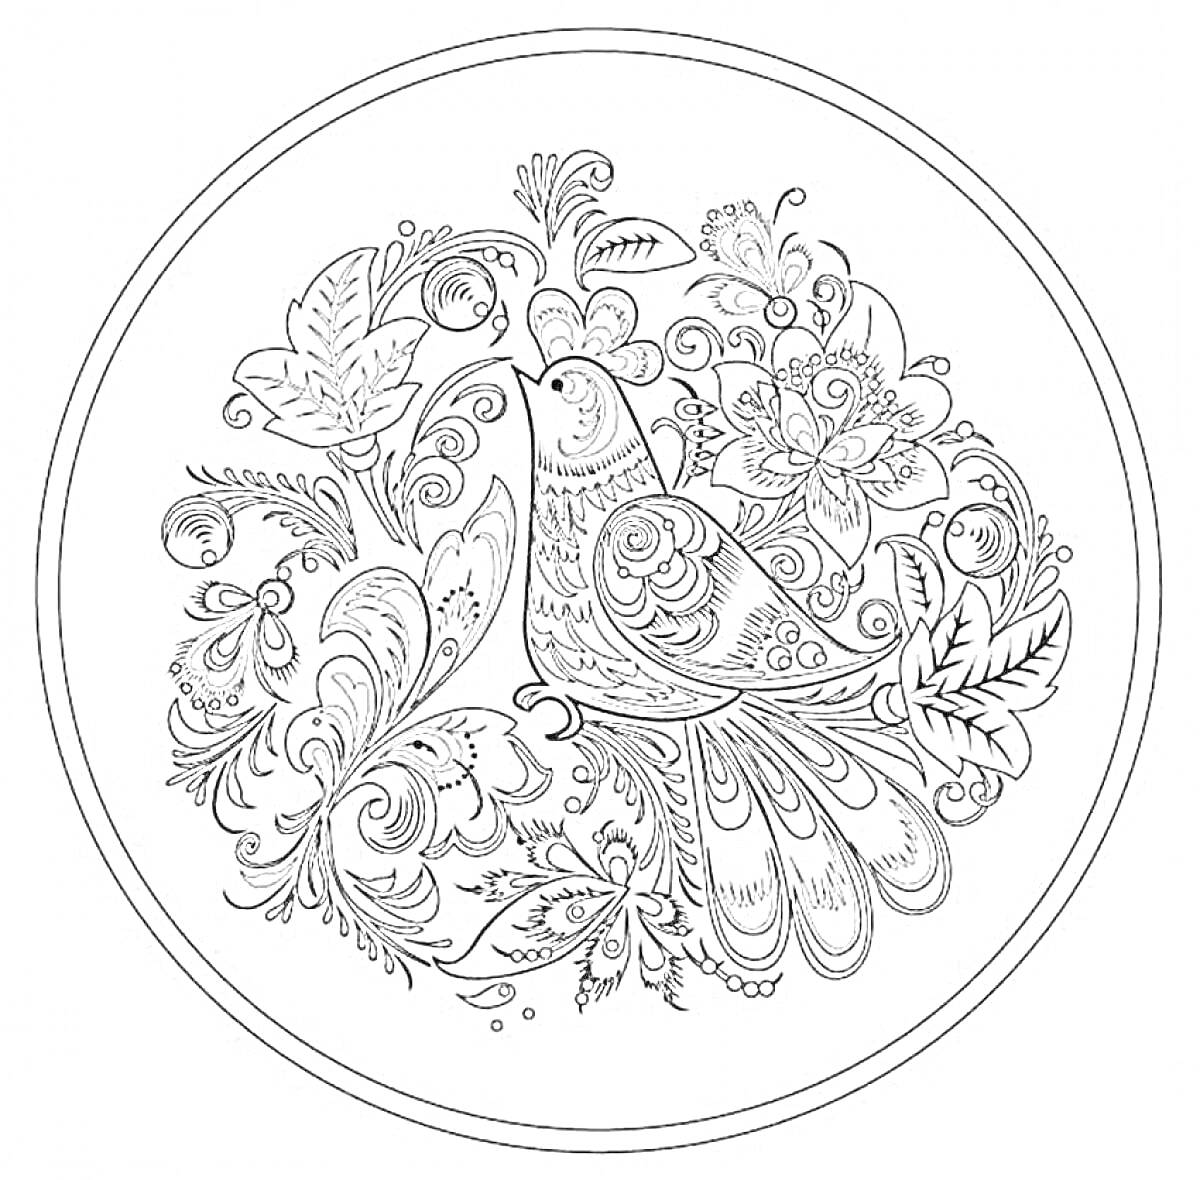 Раскраска Птица среди цветочных узоров на круглой тарелке в стиле хохлома.